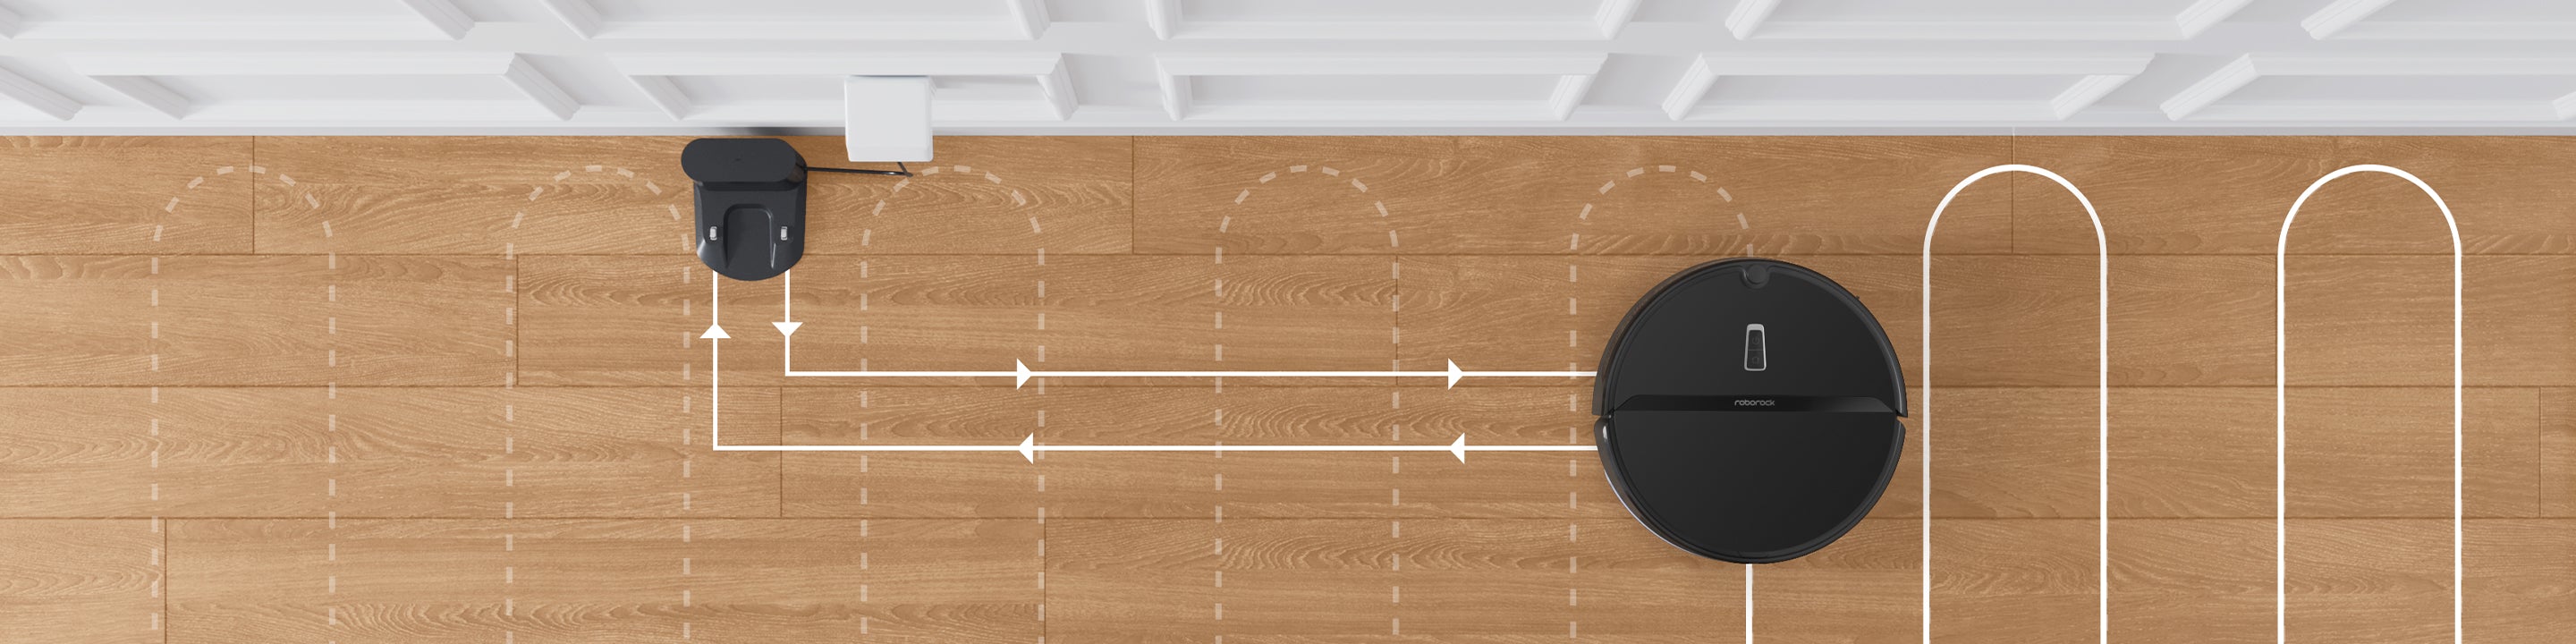 Der Roborock E4 reinigt große Wohnumgebungen durch automatisches Nachladen mühelos.